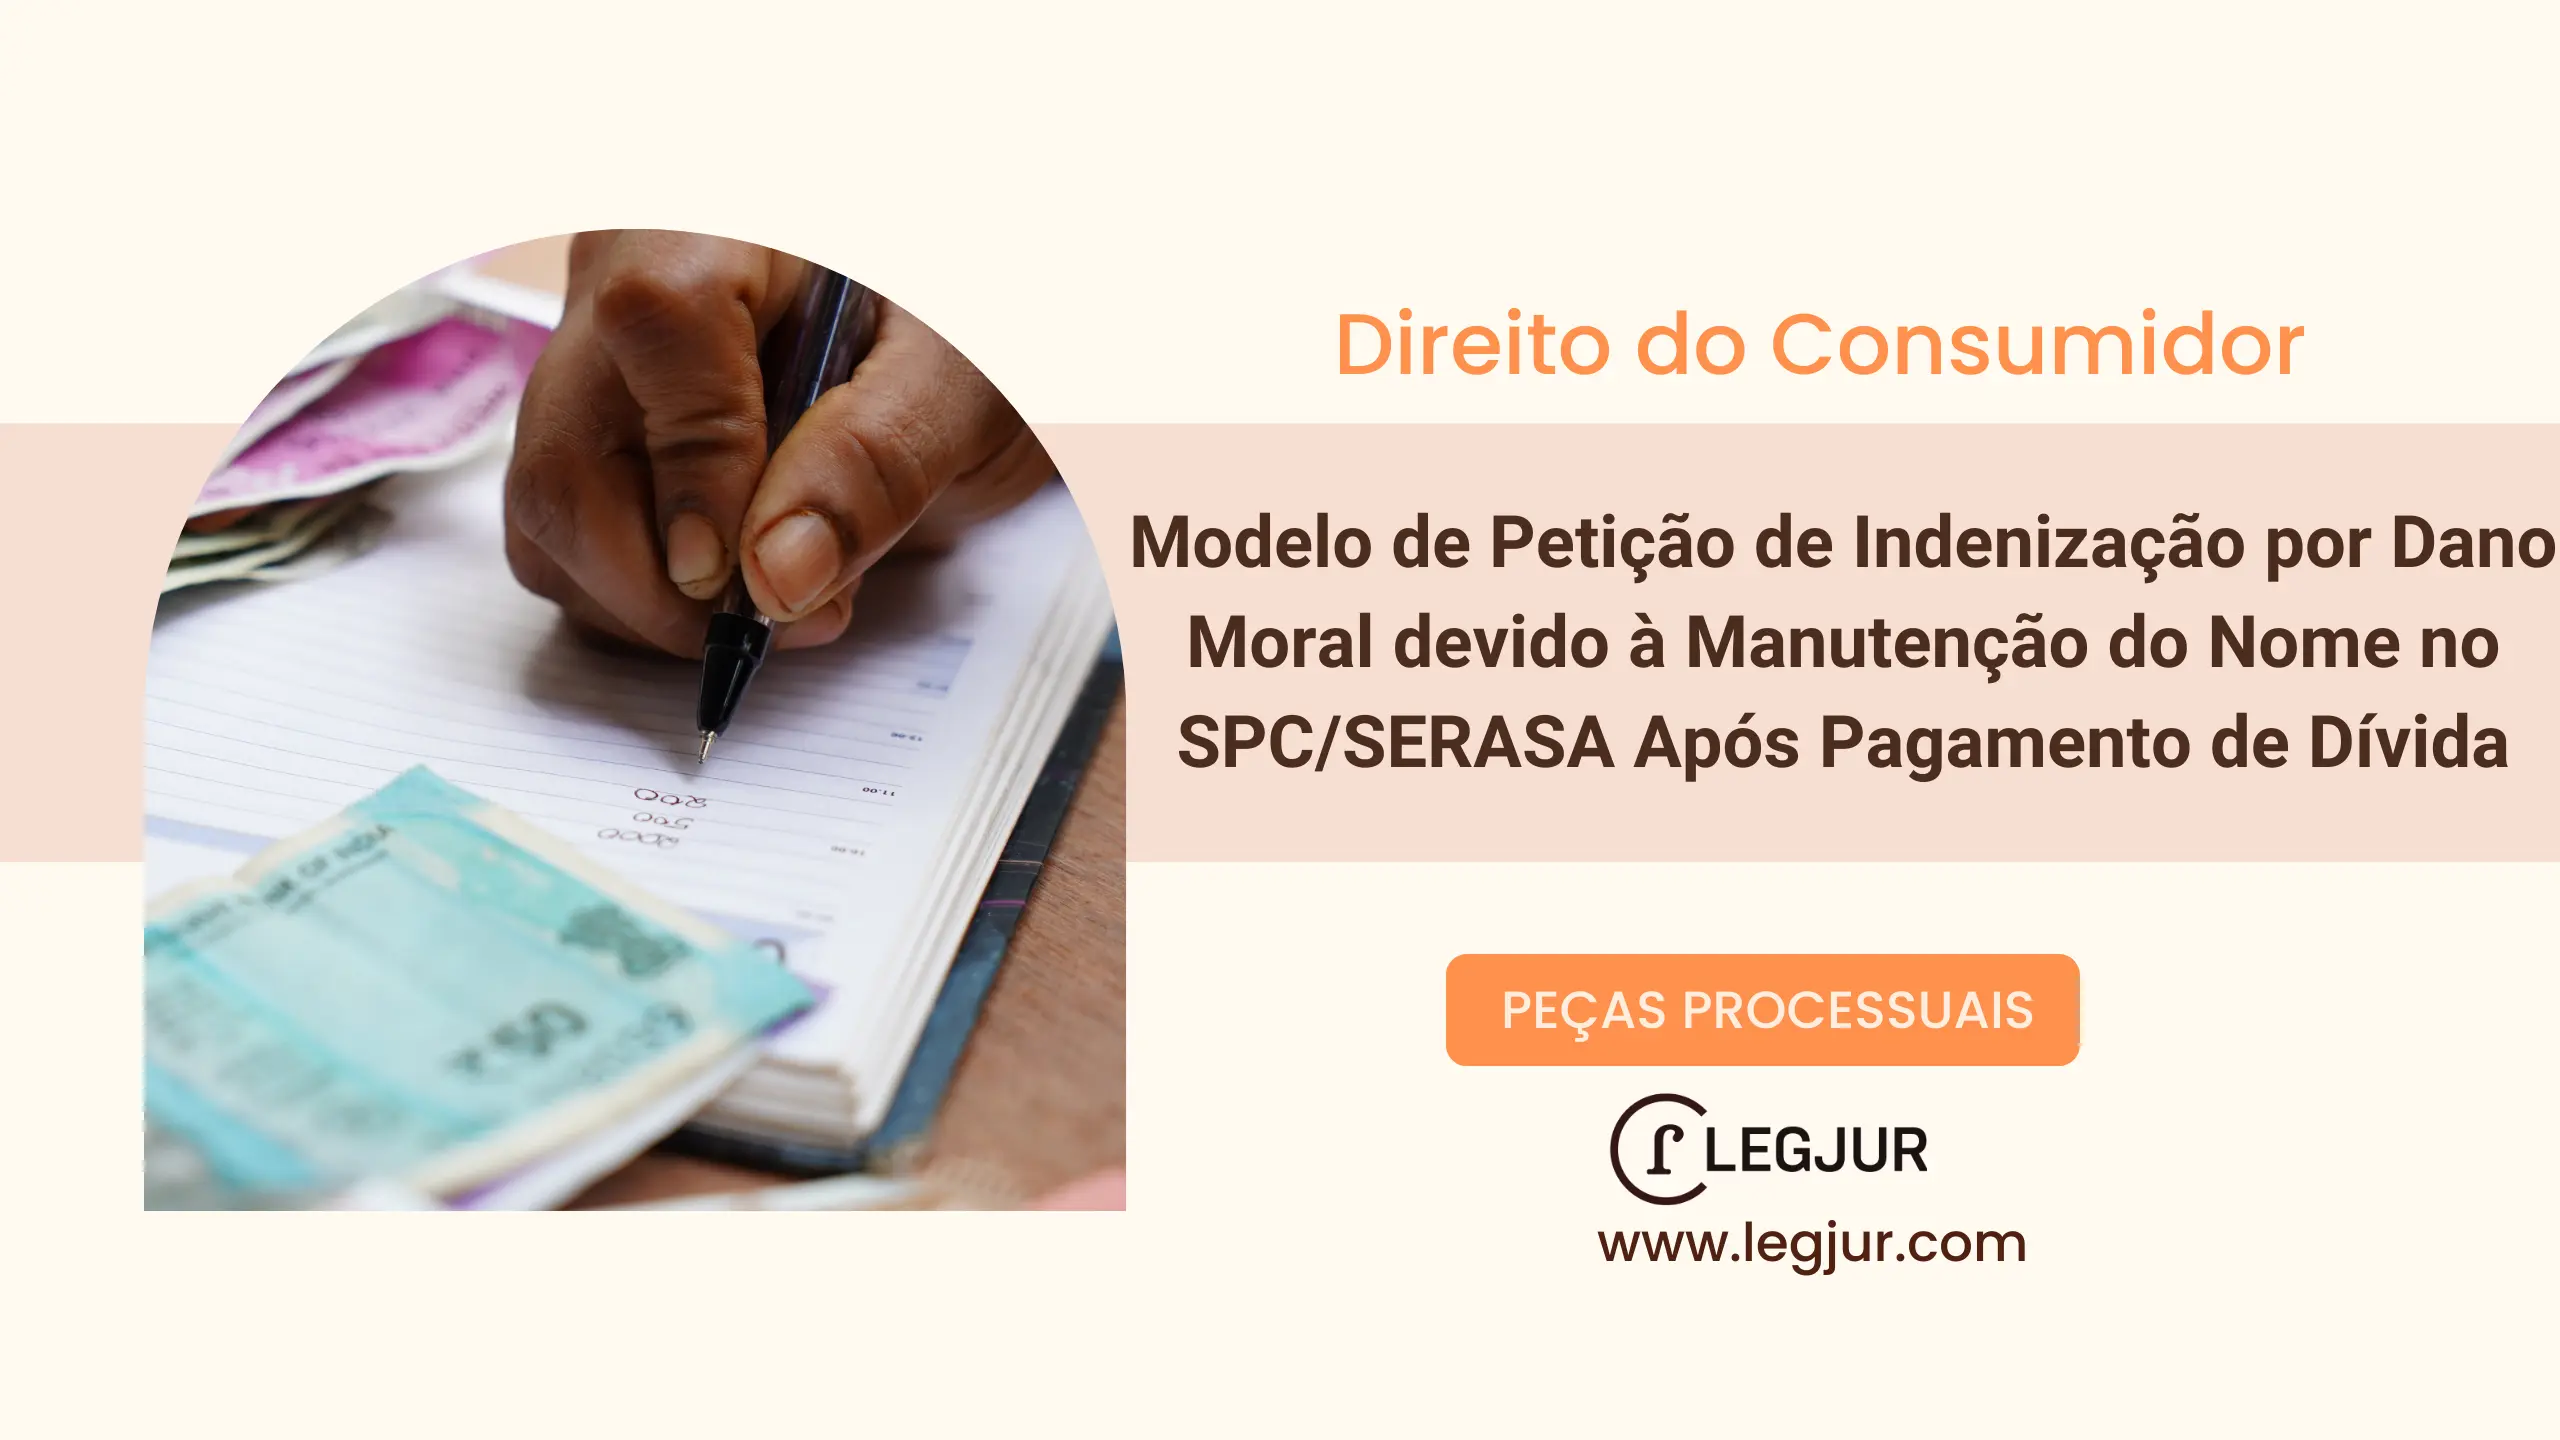 Modelo de Petição de Indenização por Dano Moral devido à Manutenção do Nome no SPC/SERASA Após Pagamento de Dívida